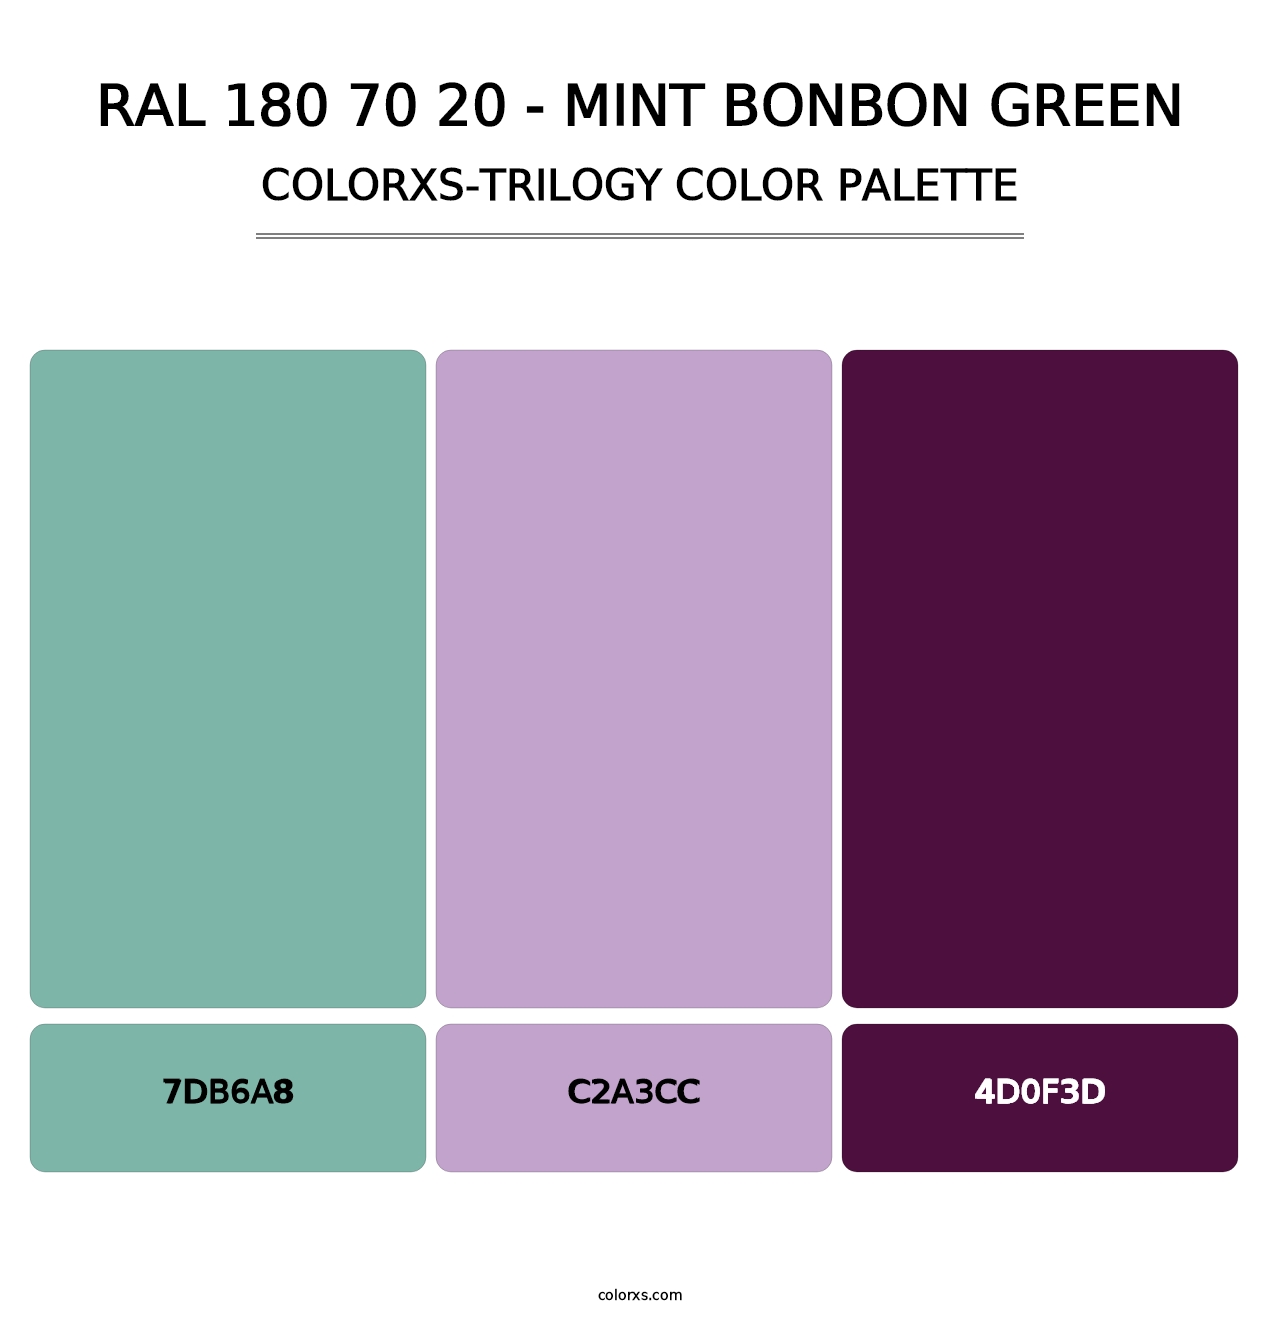 RAL 180 70 20 - Mint Bonbon Green - Colorxs Trilogy Palette